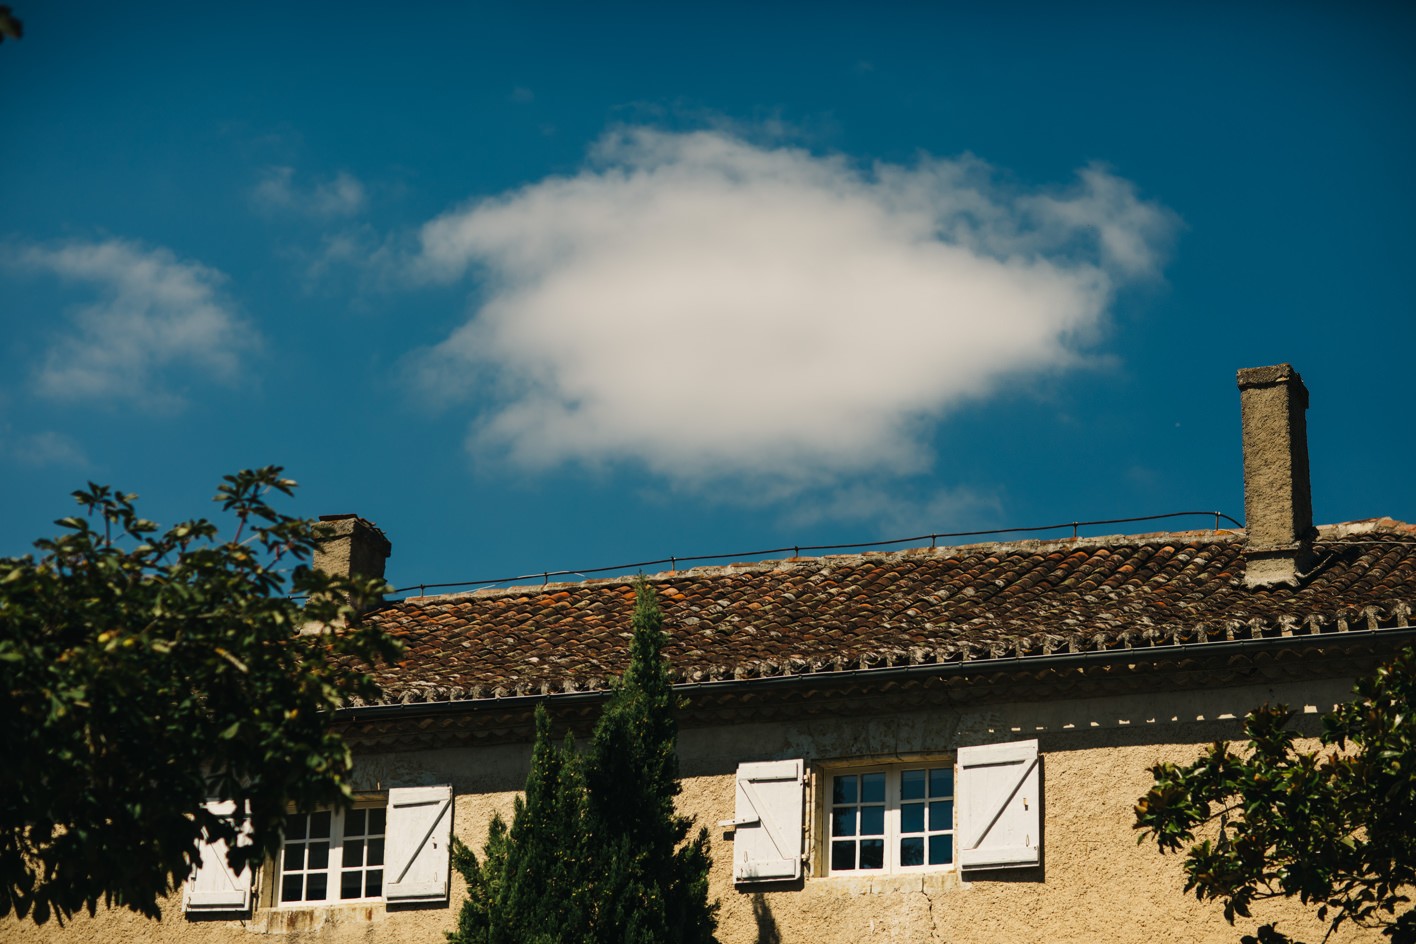 Chateau Lartigolle with single cloud in sky